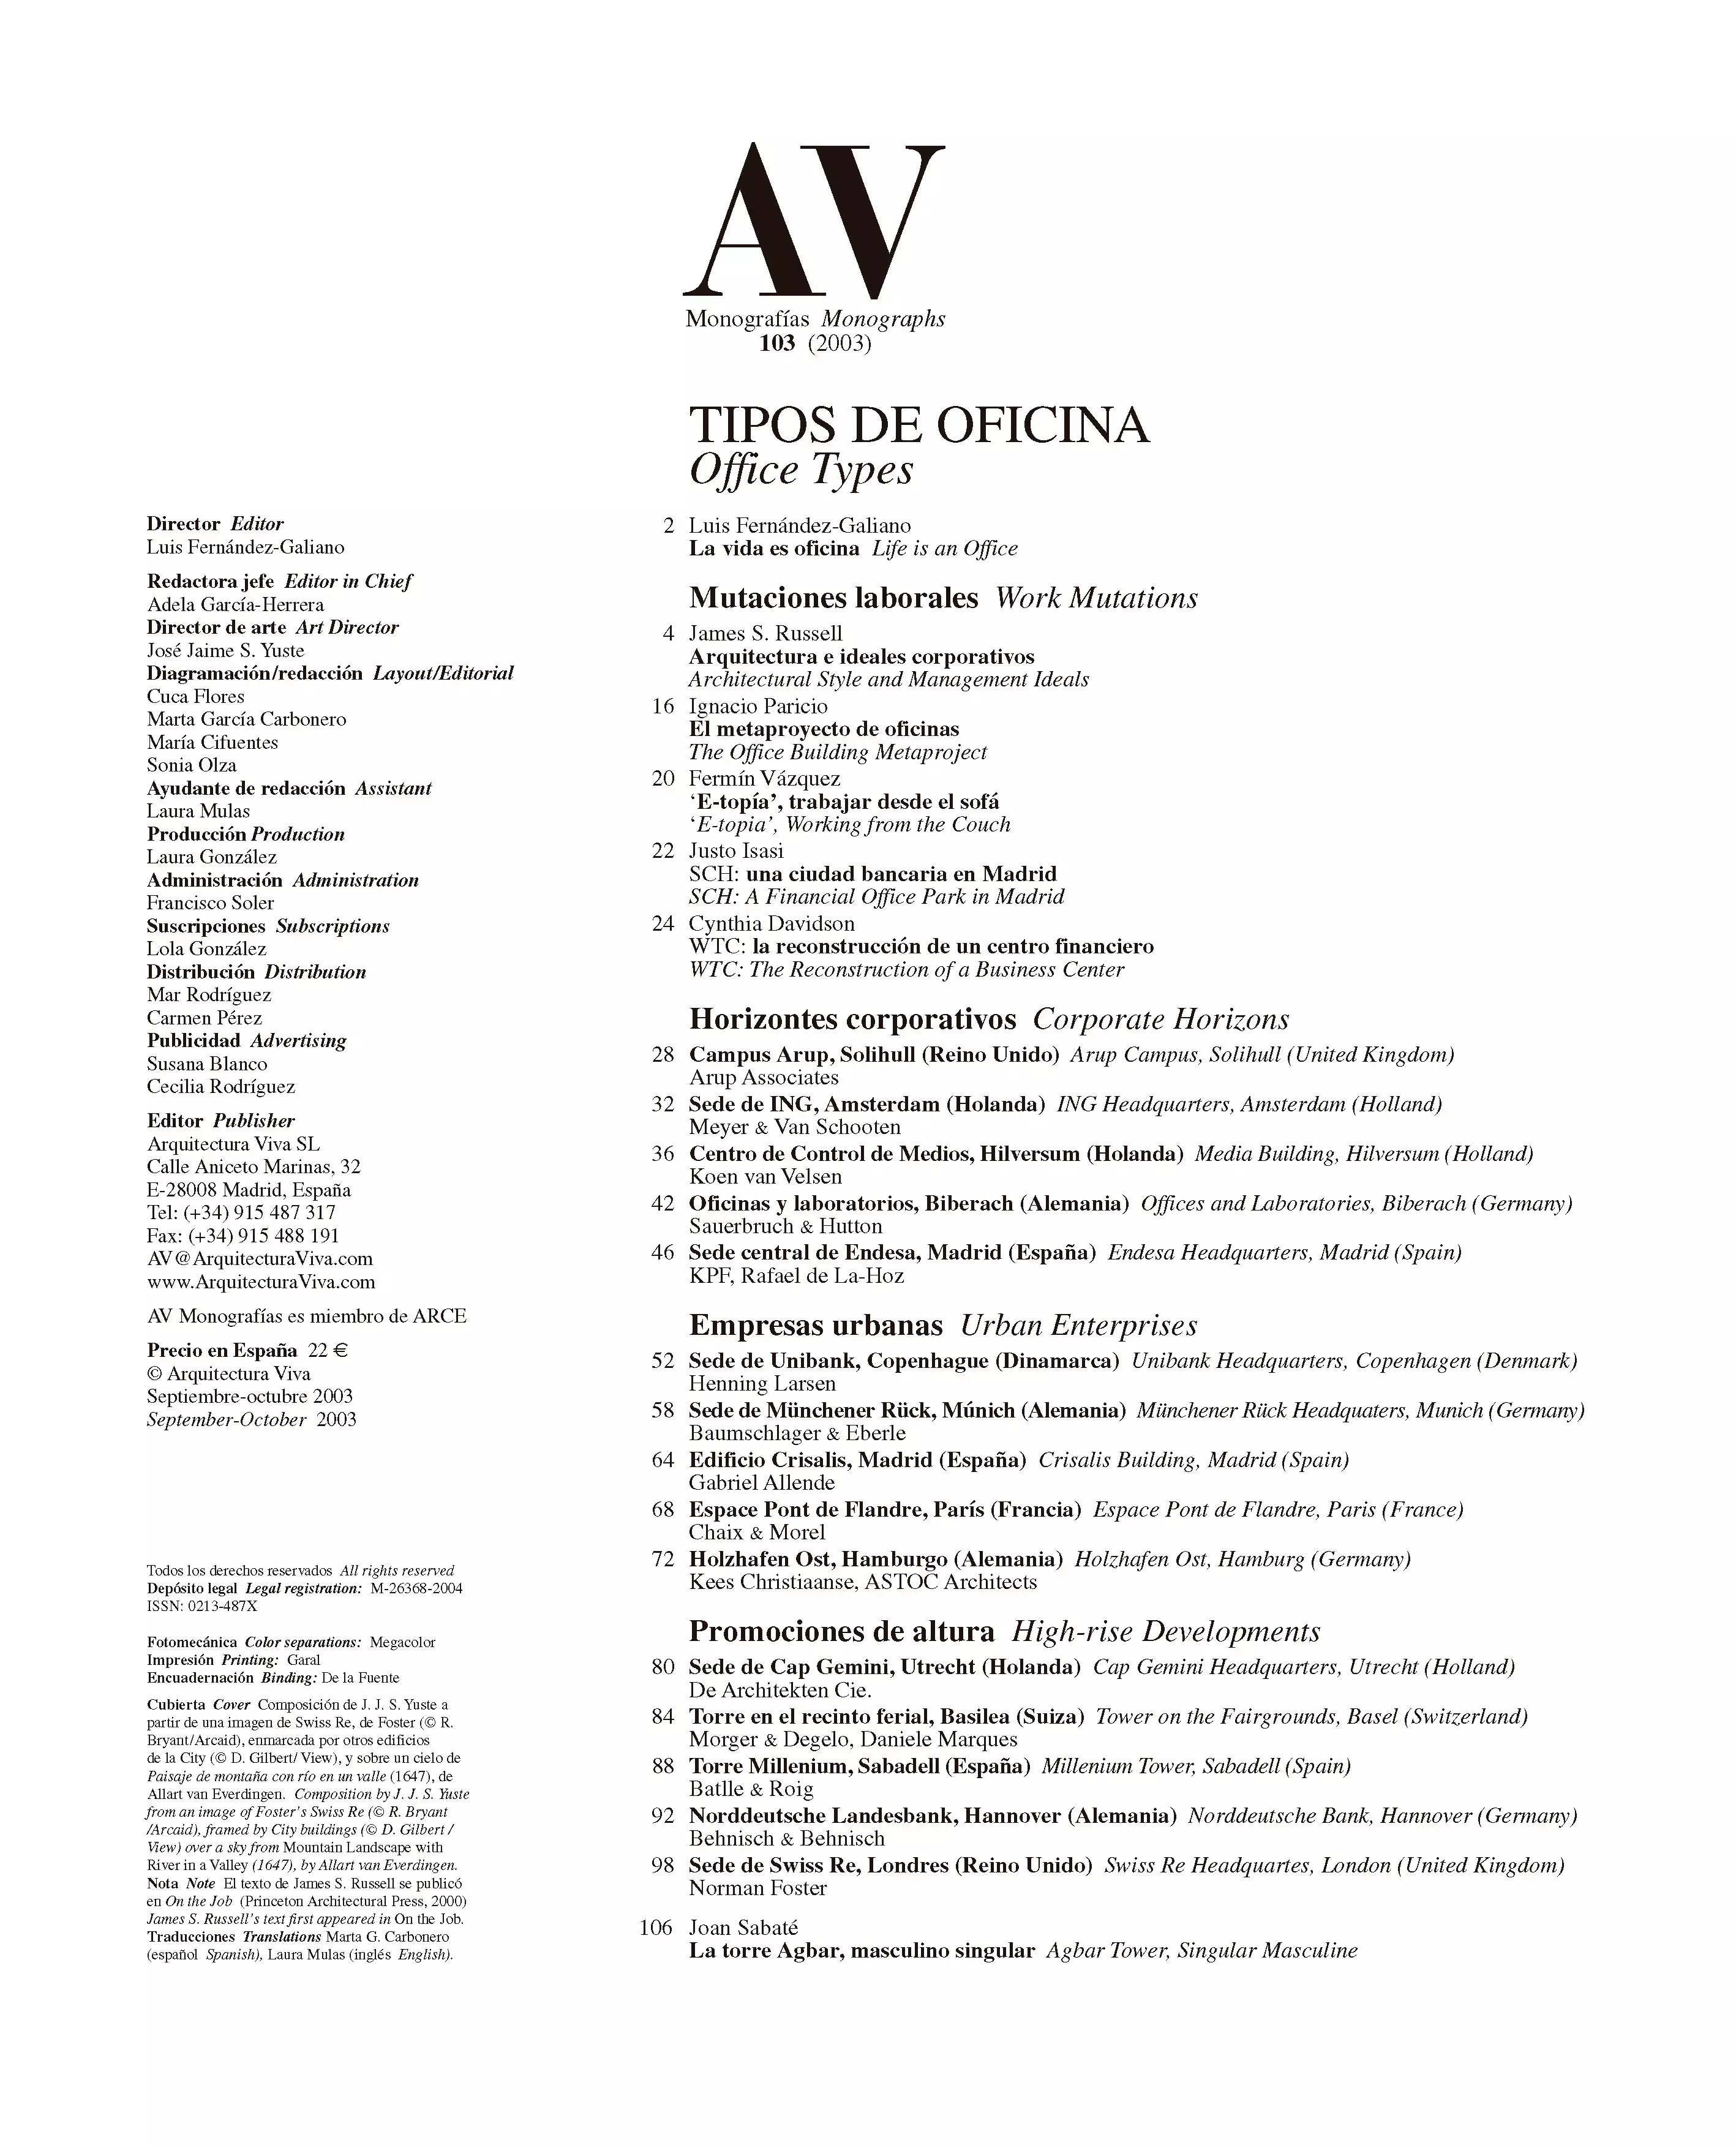 AV Monografías 103 - Office Types | Arquitectura Viva